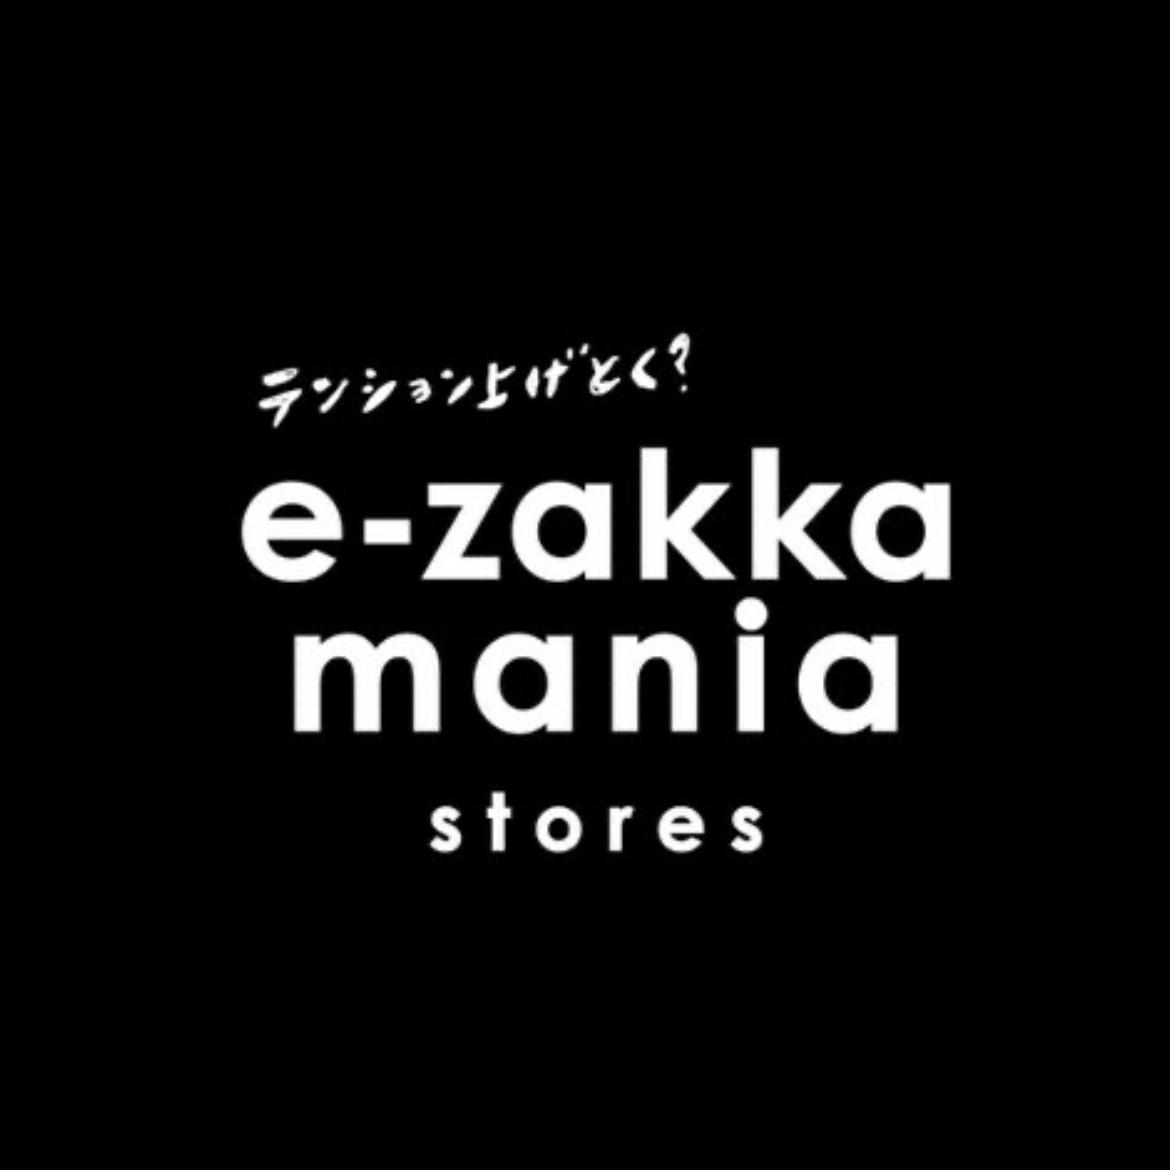 ezakkamania's images